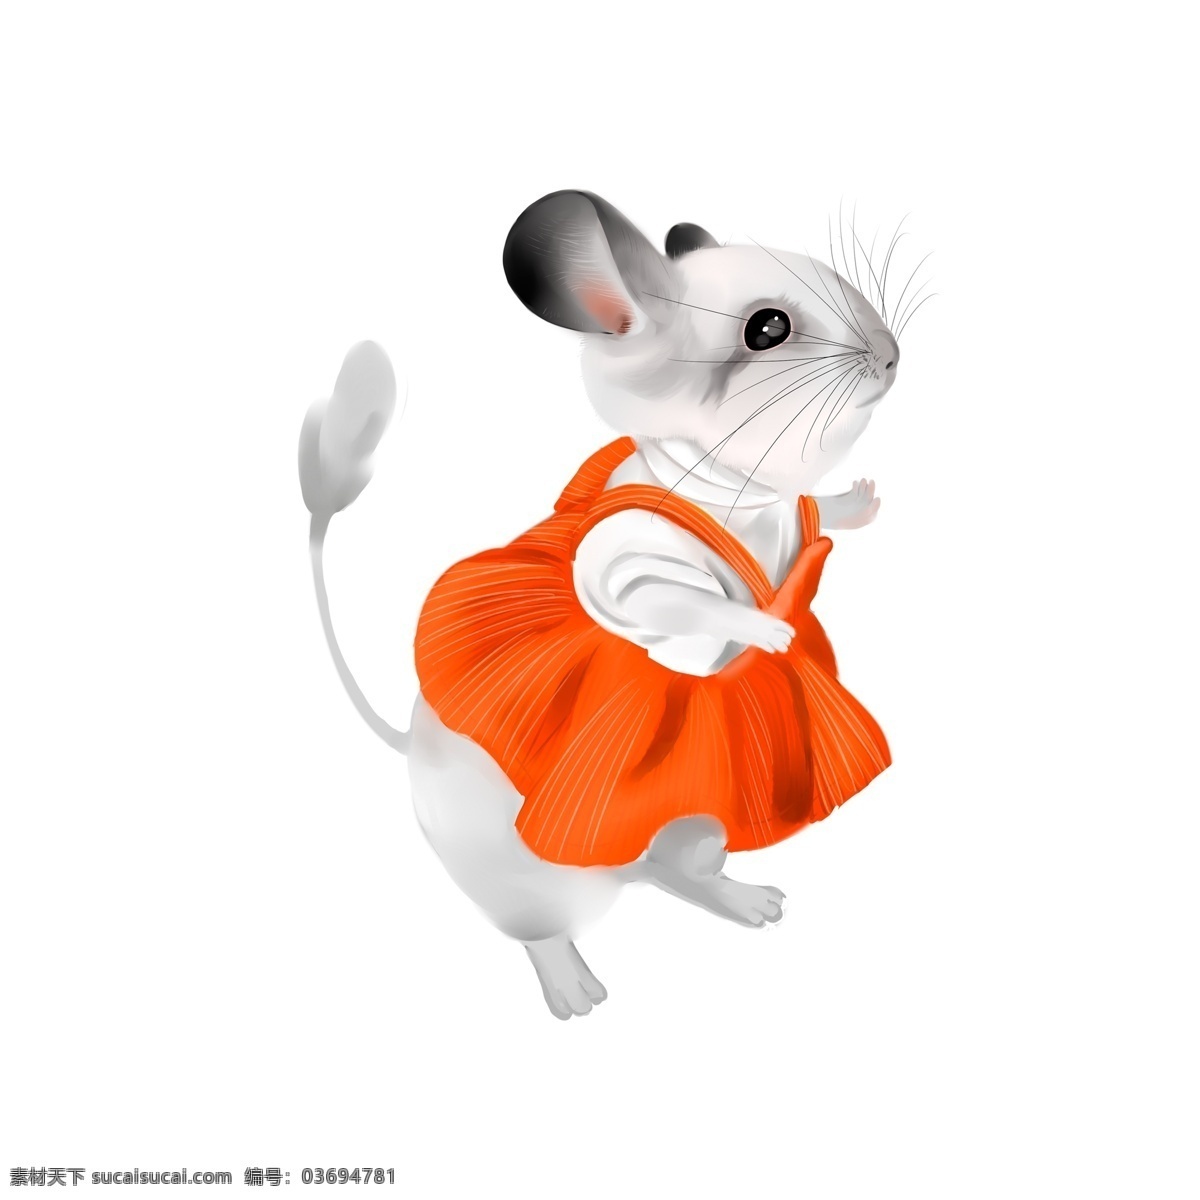 穿 桔 色 裙子 小 老鼠 卡通 元素 小老鼠 灰色 桔色裙子